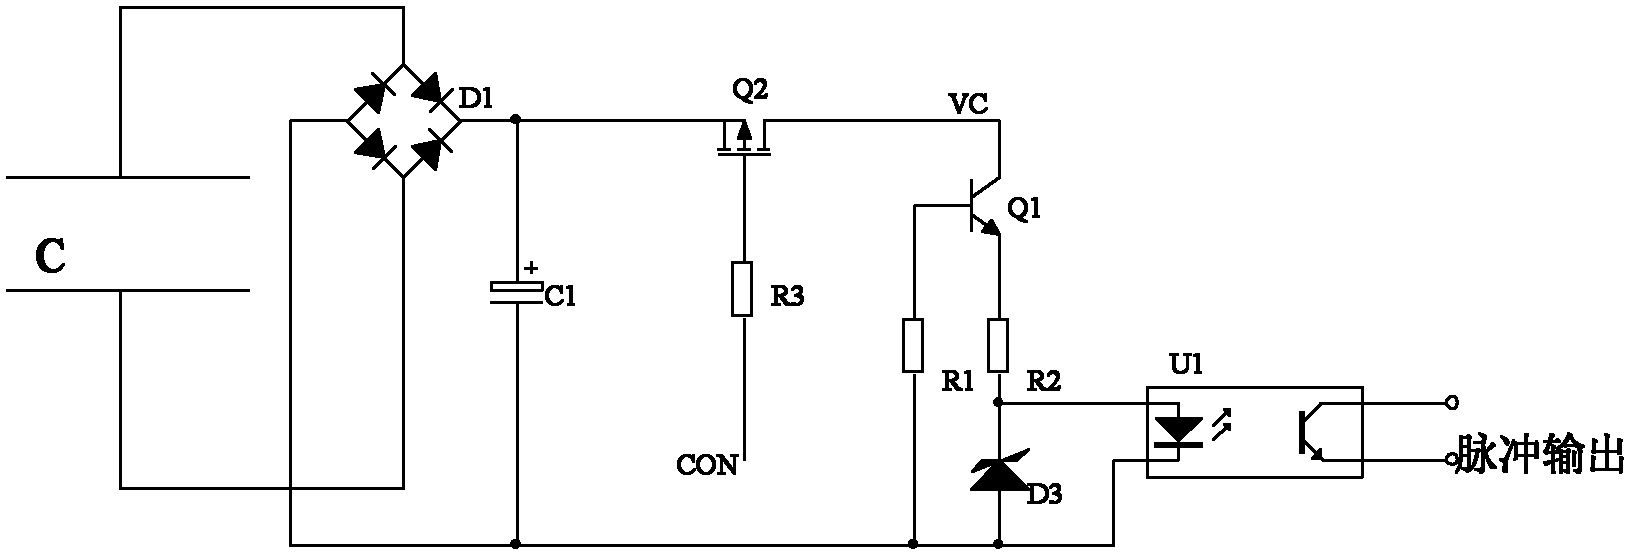 Pulse generation circuit, voltage measuring circuit and voltage measuring method